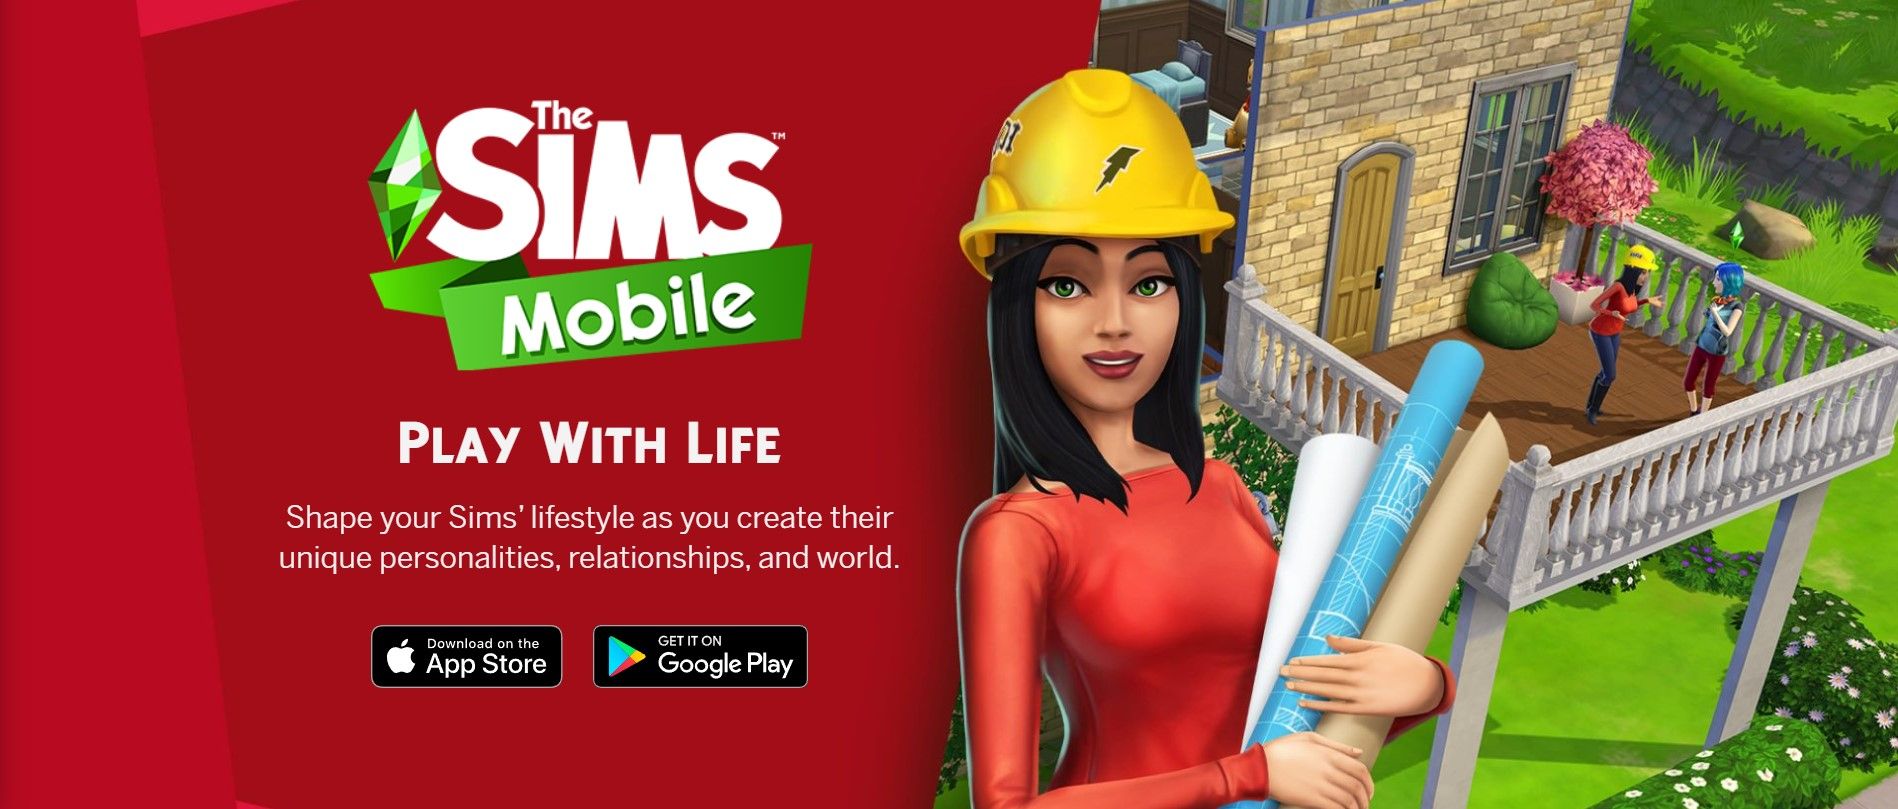 Miniatura promozionale di The Sims Mobile che mostra una Sim donna con un elmetto che tiene dei progetti arrotolati